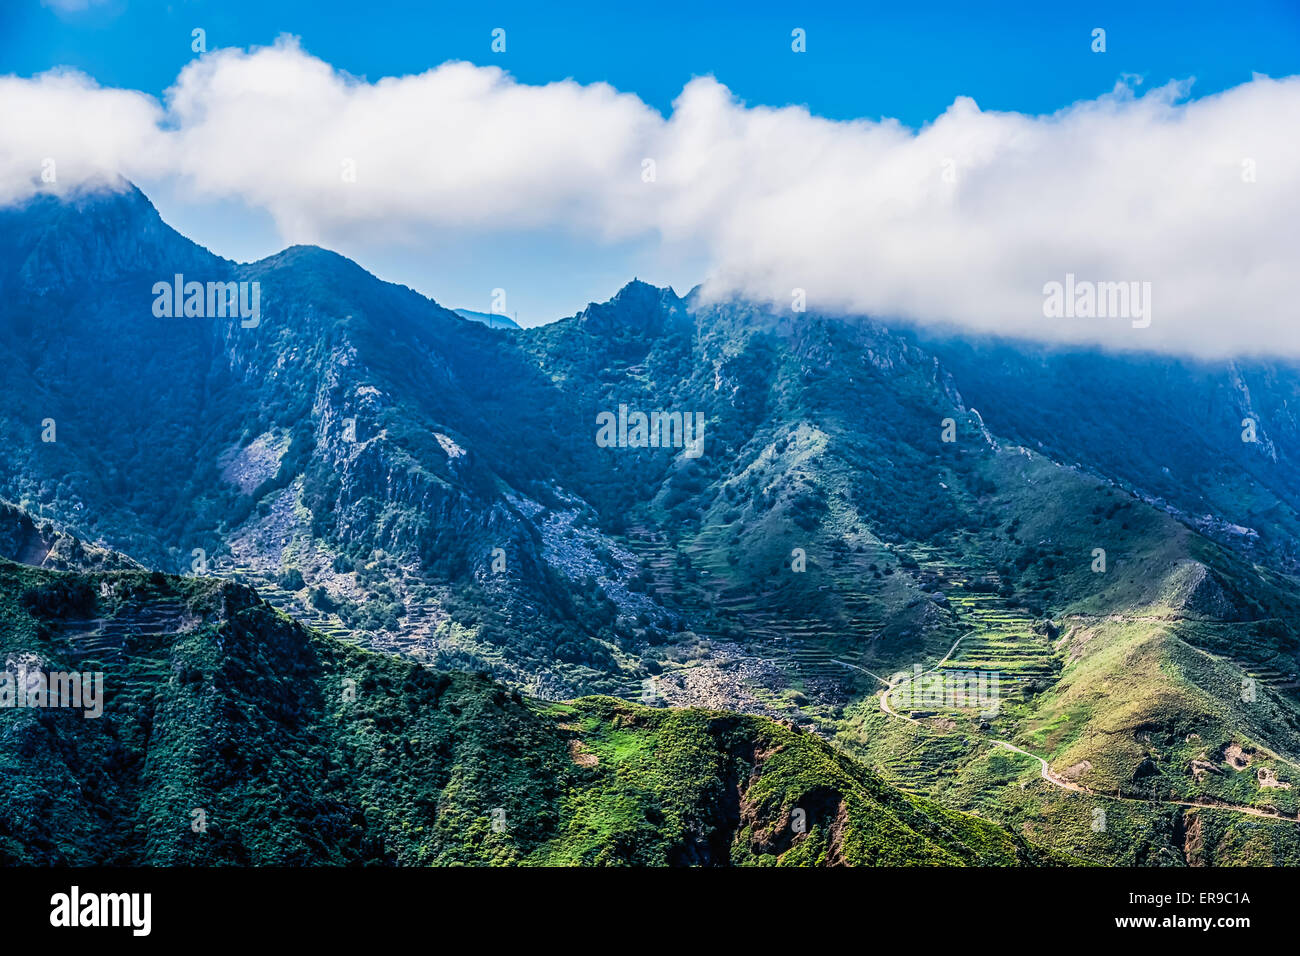 Montagnes avec nuages sur ciel bleu paysage dans l'île de Ténérife, Espagne Banque D'Images